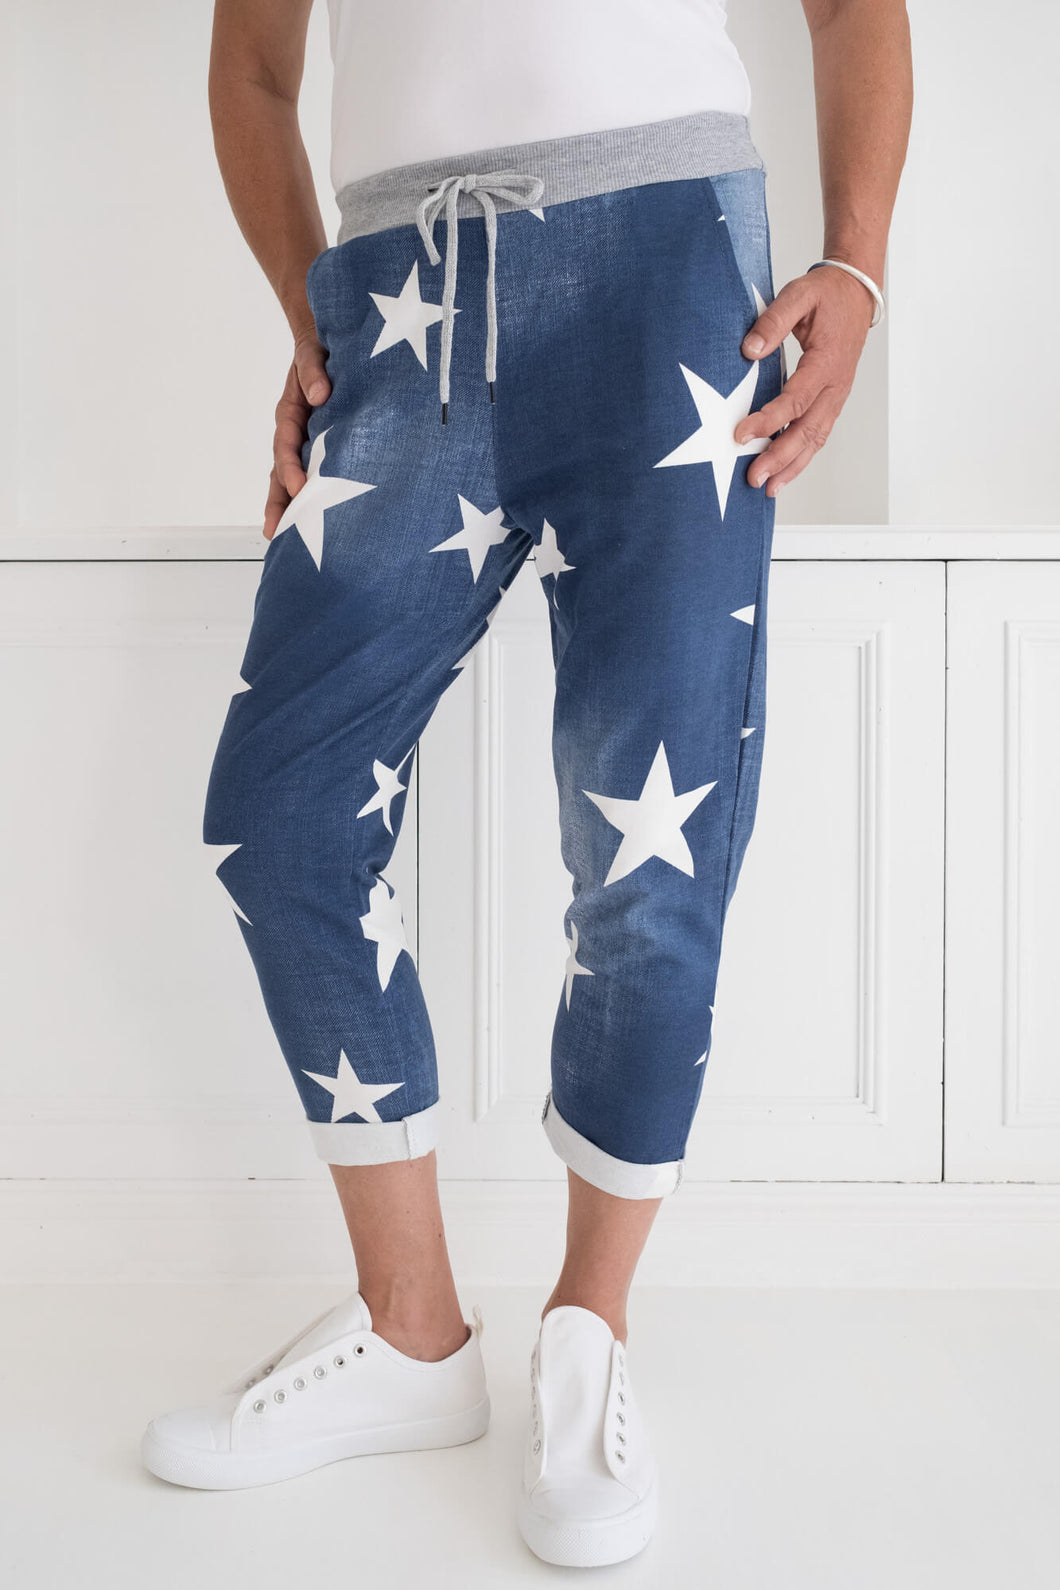 rockstar pants star blue white stretch plus size